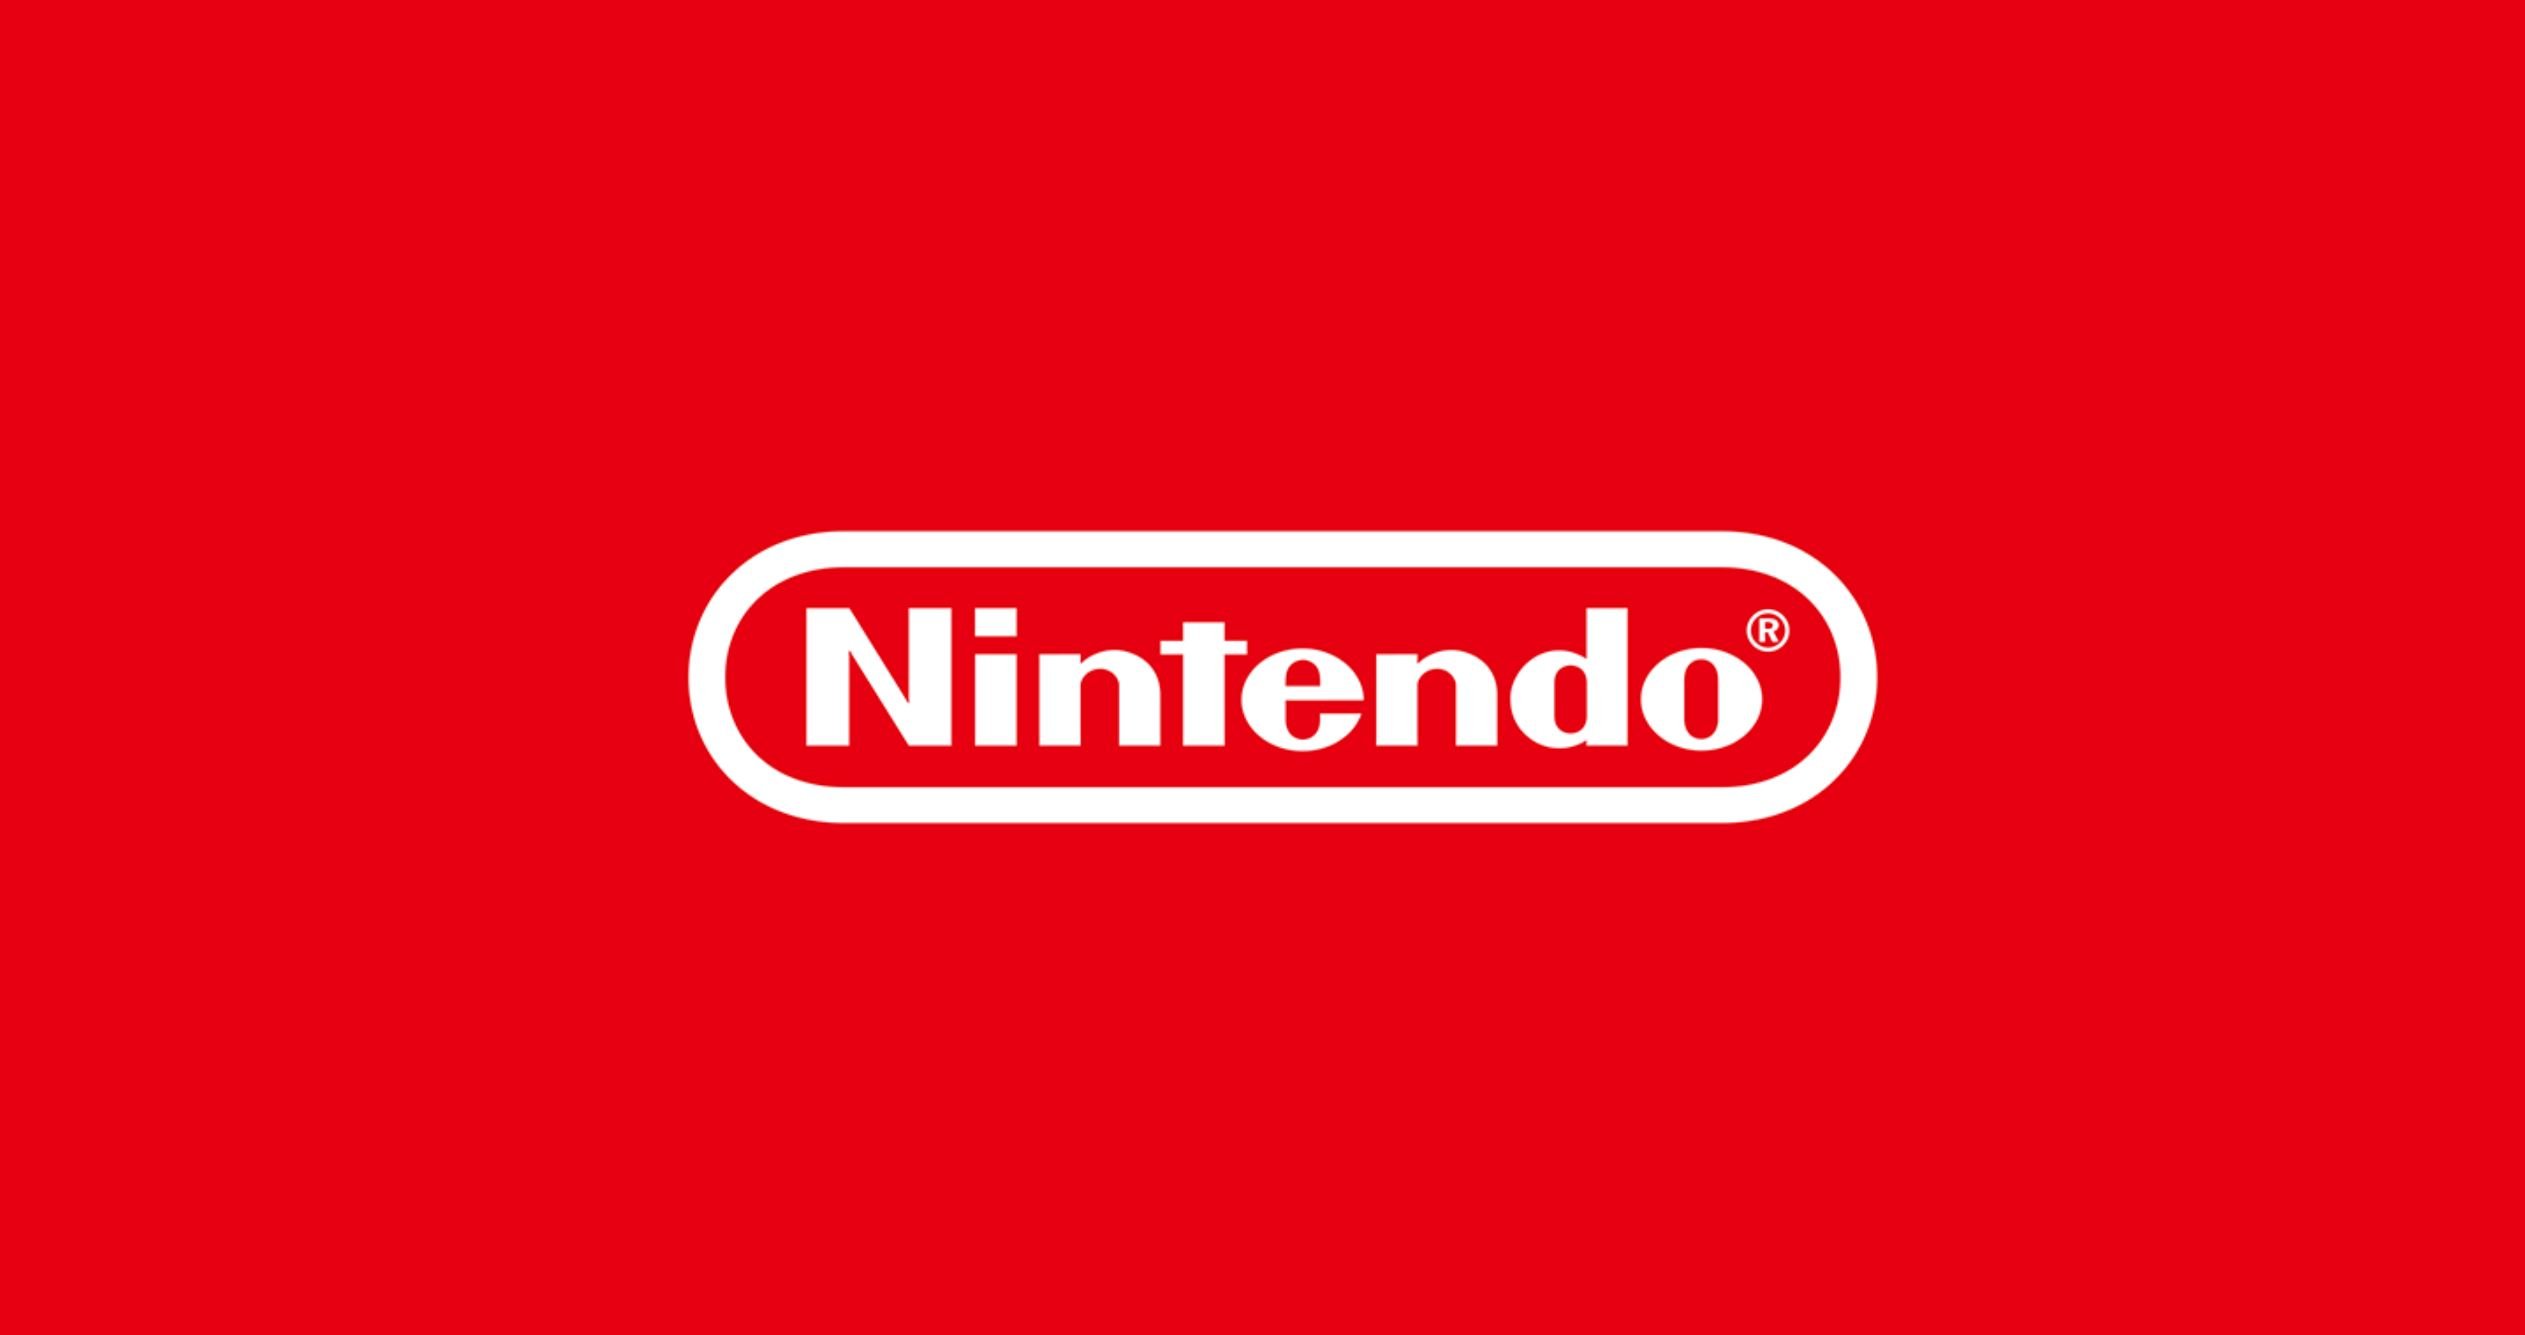 Nintendo tire un trait sur le passé avec cette décision